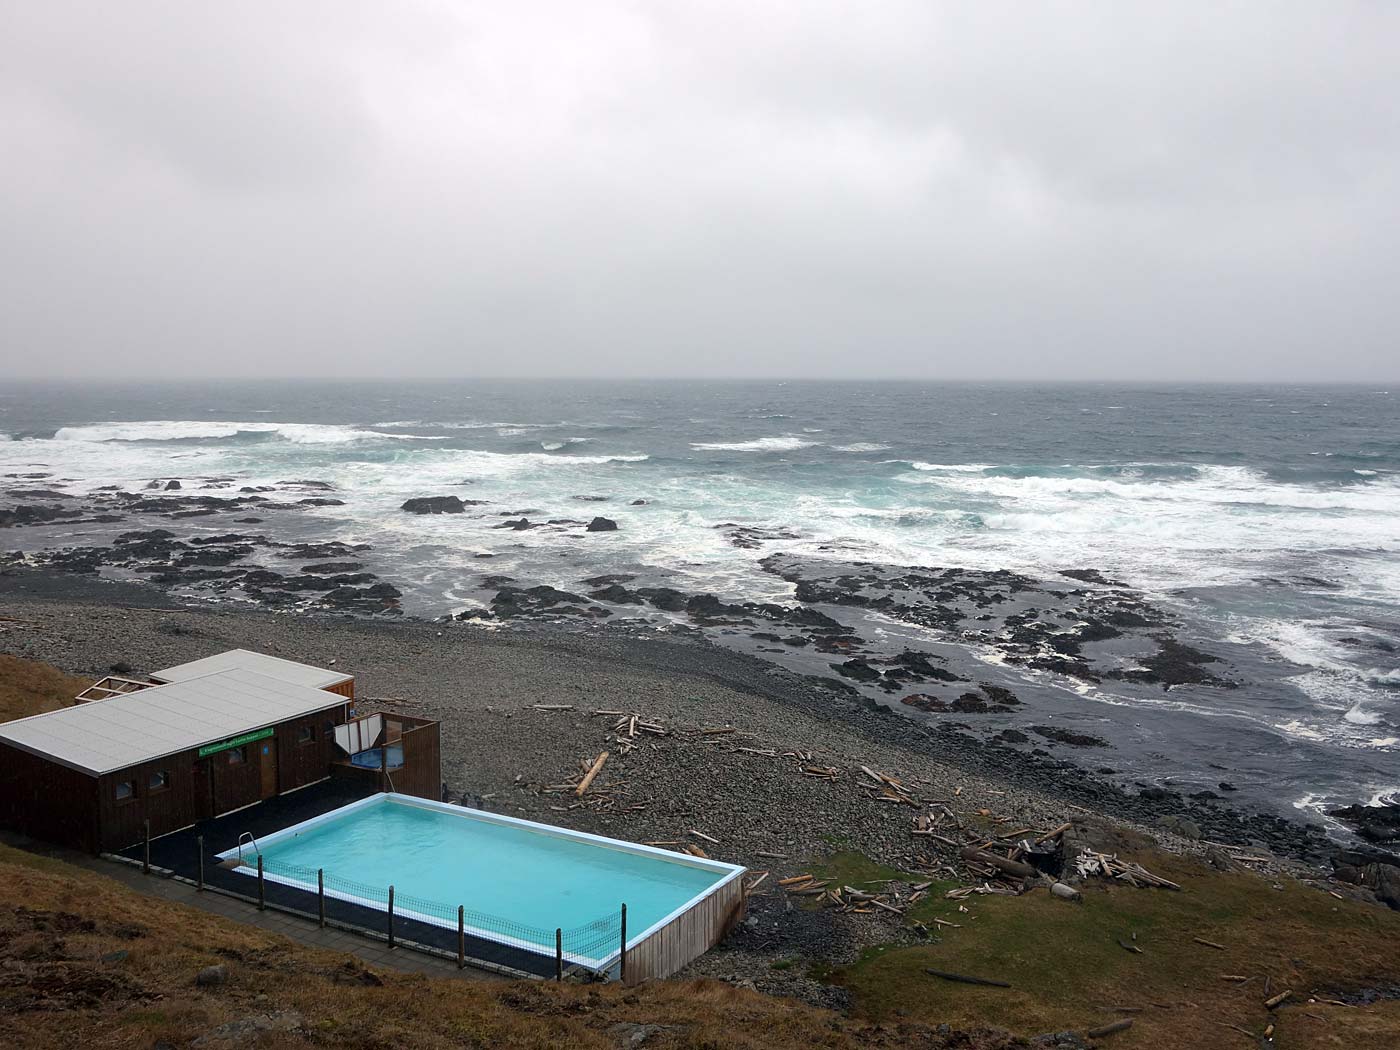 Djúpavík. Der erste Tag. Fahrt nach Norden ... - Ich 'musste' zum Schwimmbad Krosness fahren - und machte auf dem Rückweg nach Djúpavík noch die eine und andere Aufnahme ... (26.05.2013)